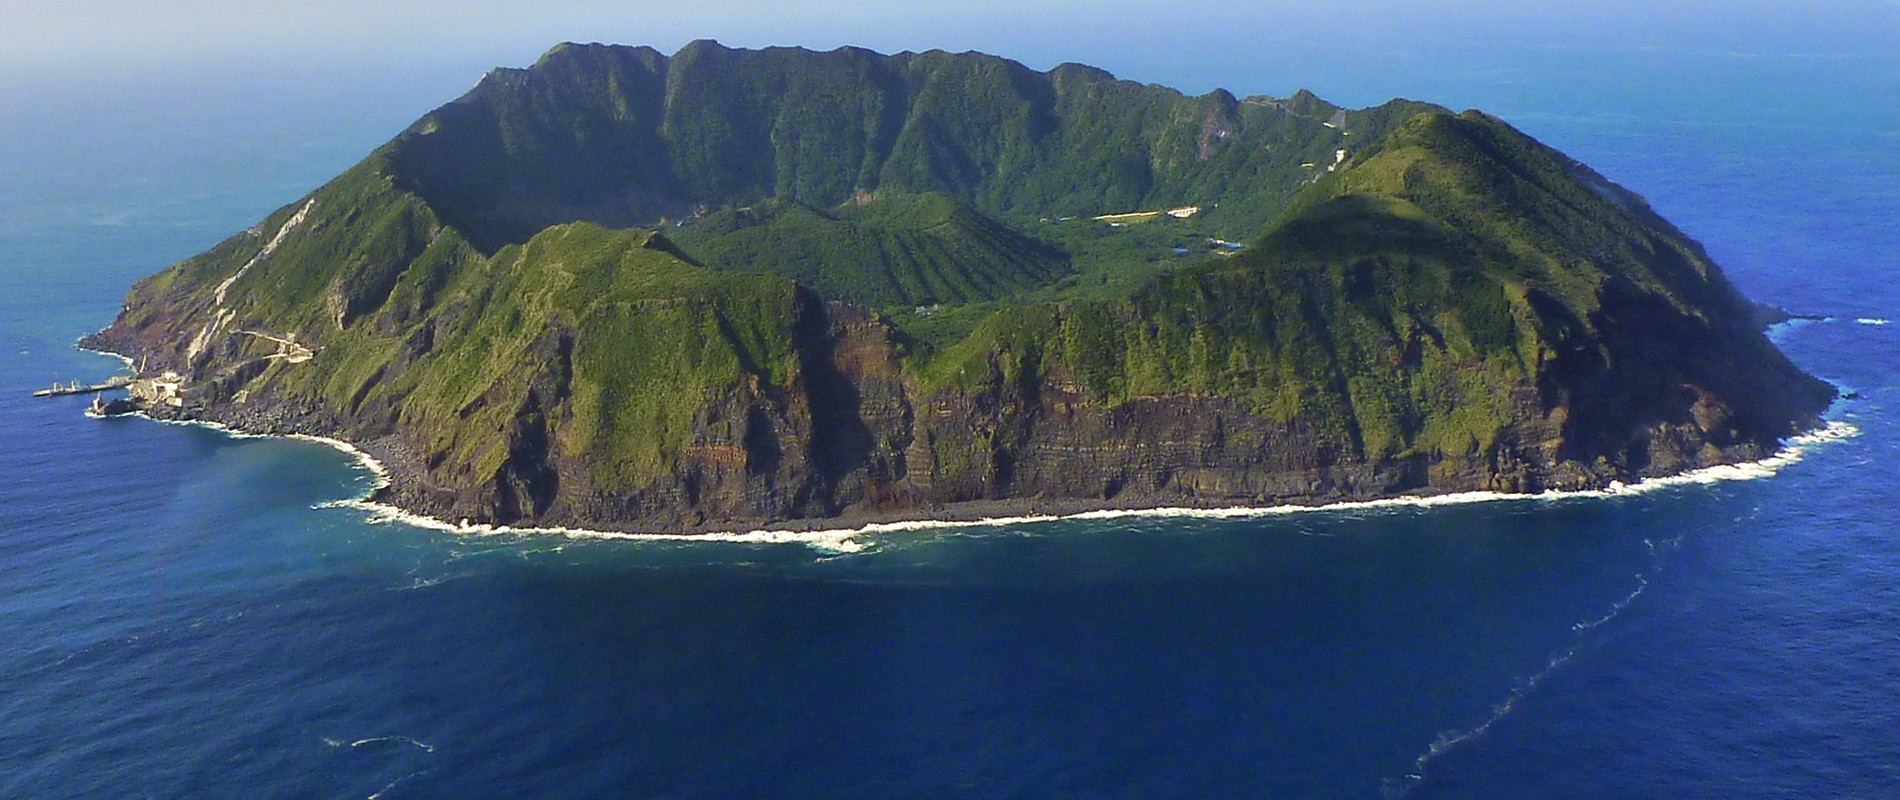 Hòn đảo núi lửa nằm biệt lập giữa biển khơi như thiên đường dưới hạ giới - 1